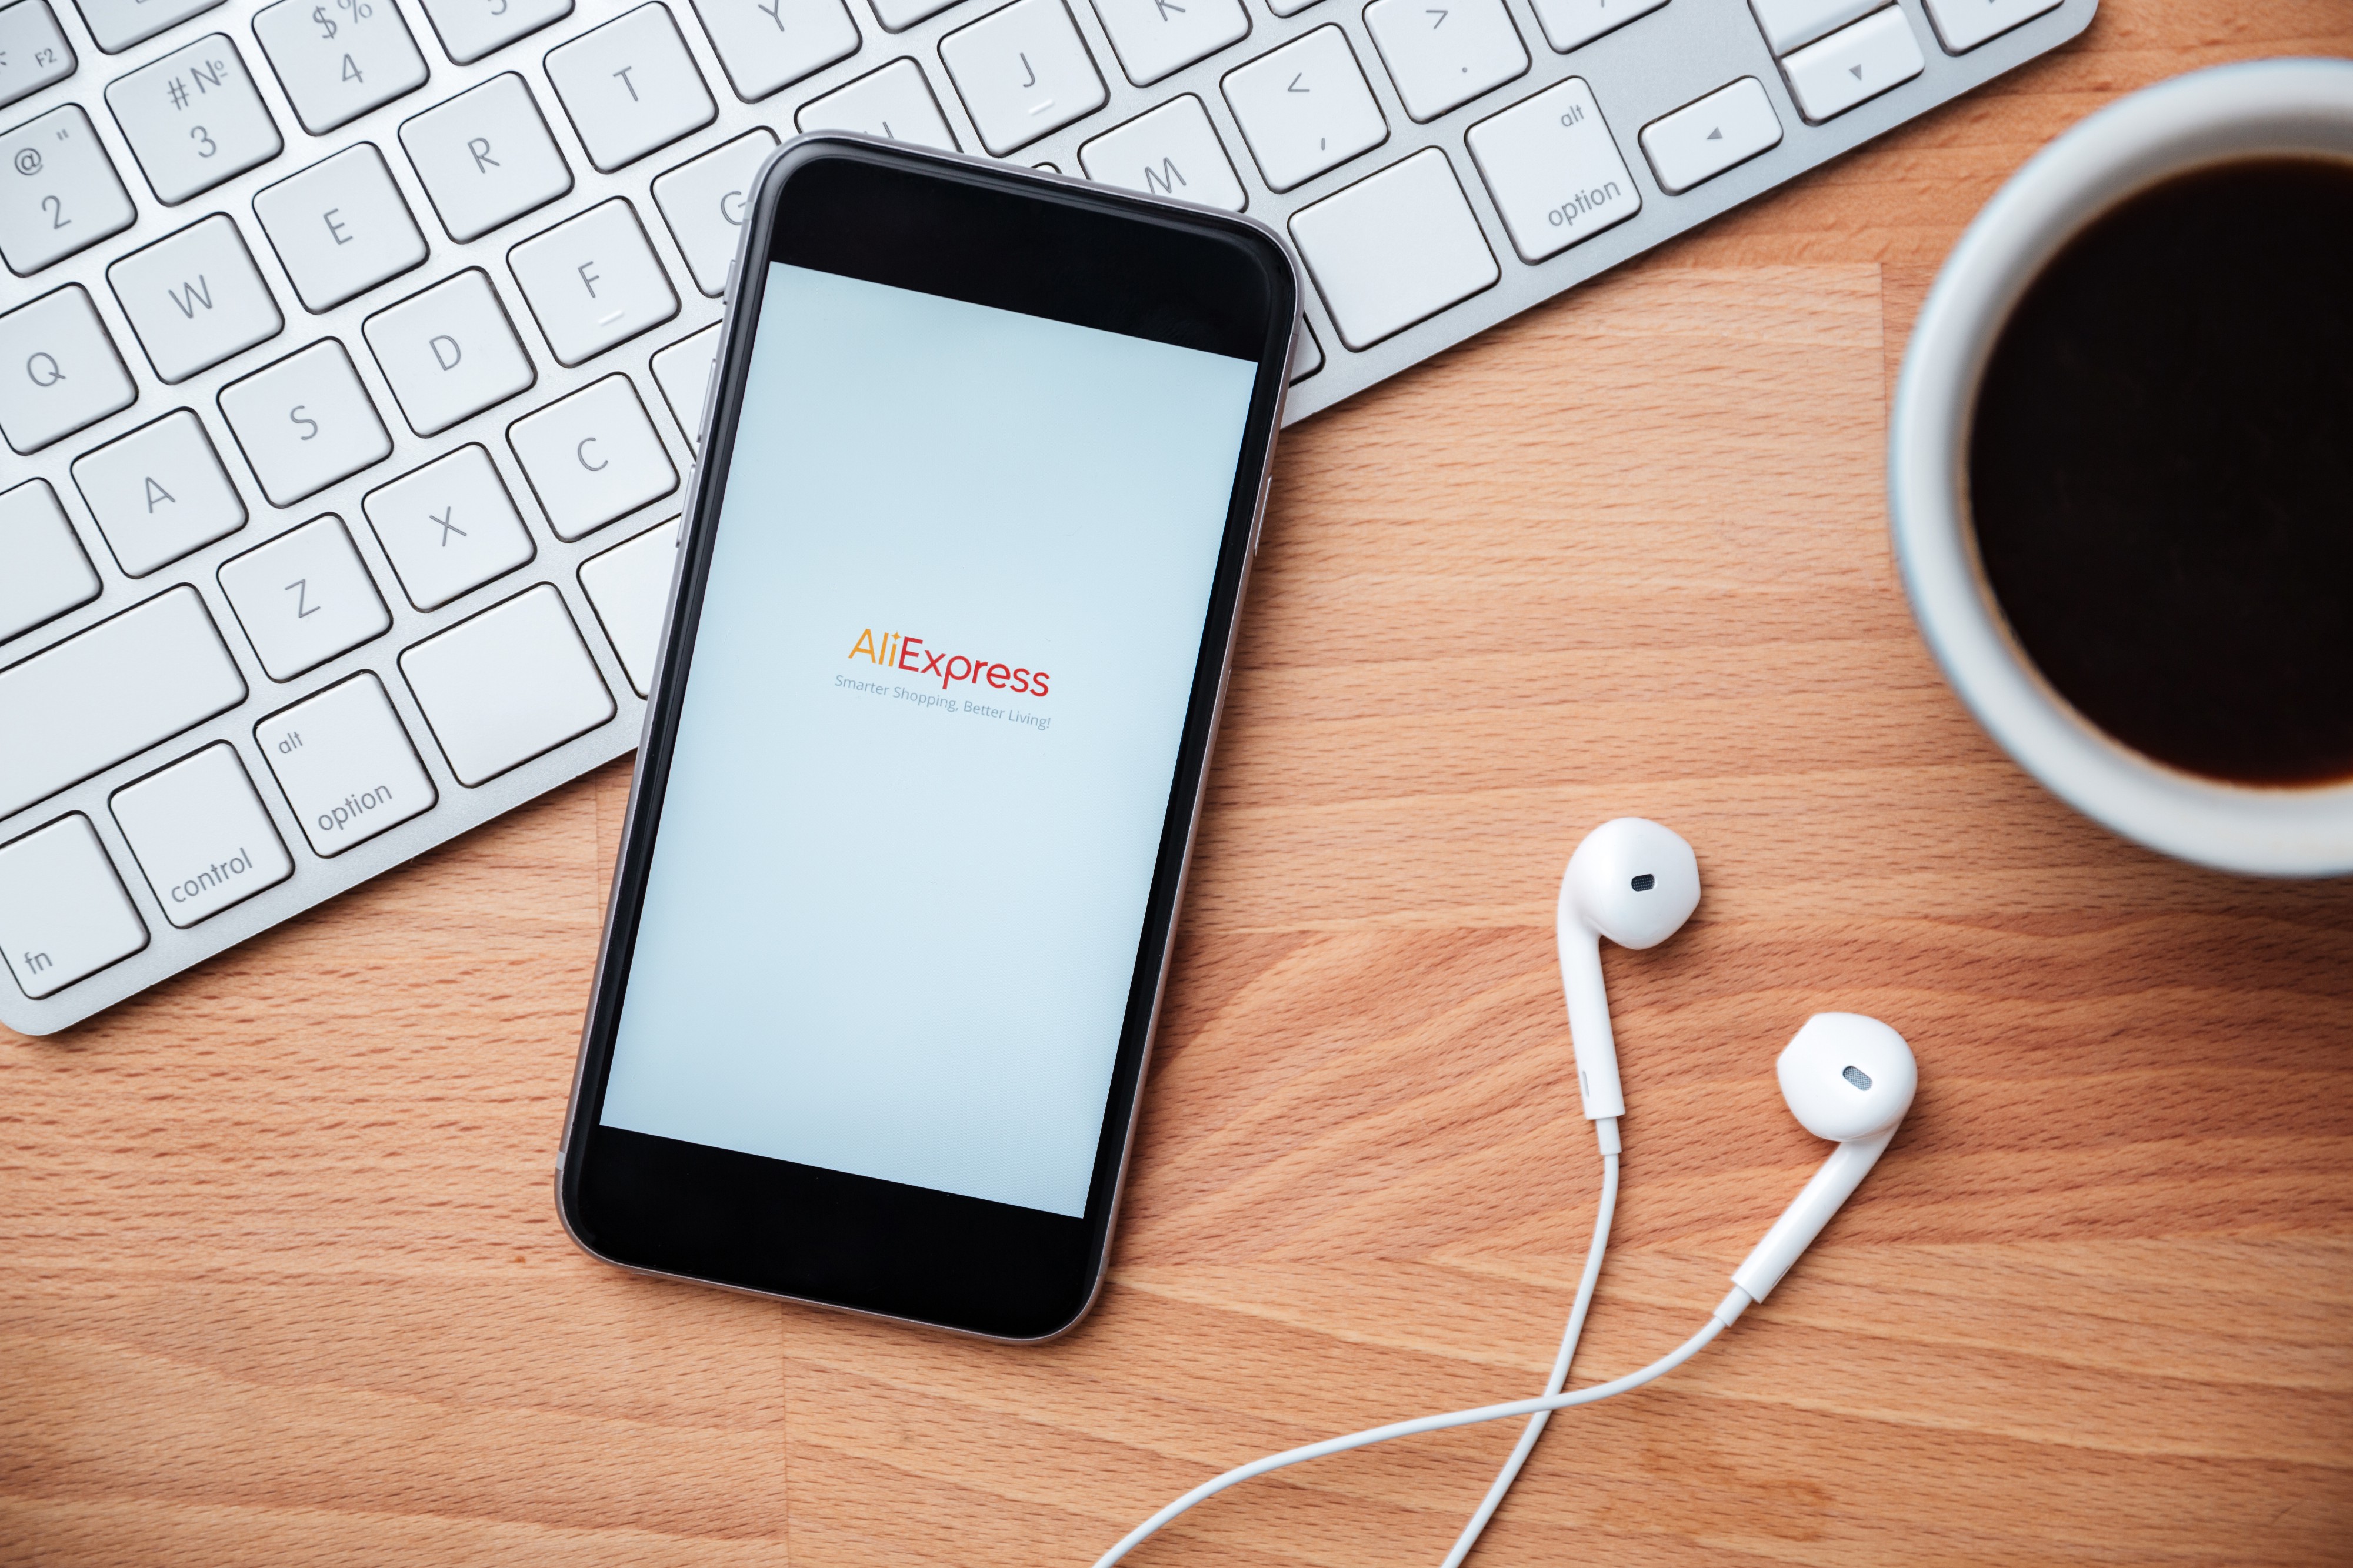 Descubra os benefícios de usar o app AliExpress para comprar pelo celular